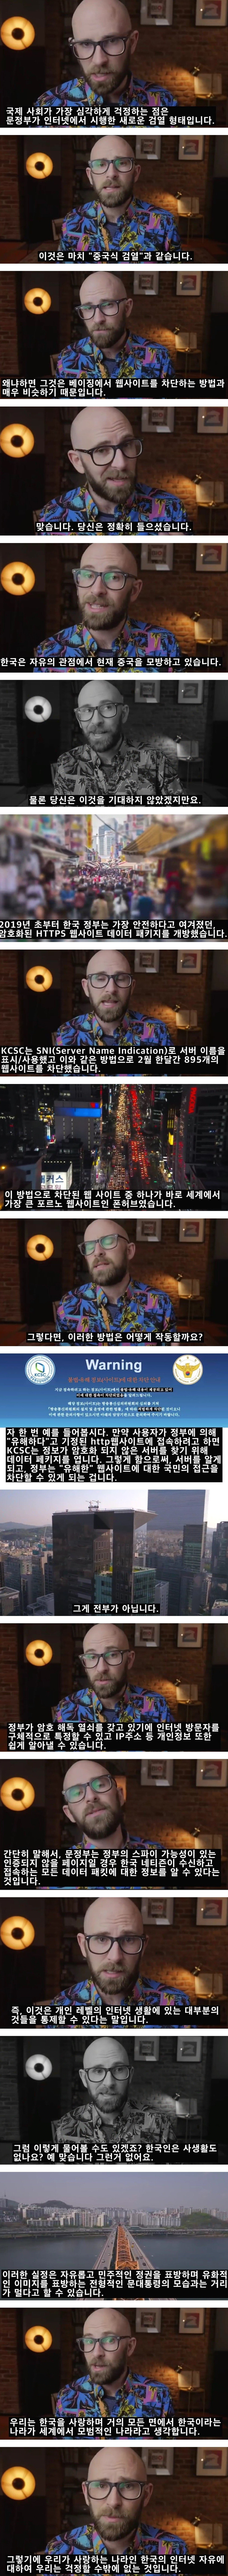 한국의 인터넷 검열을 걱정하는 미국인.jpg